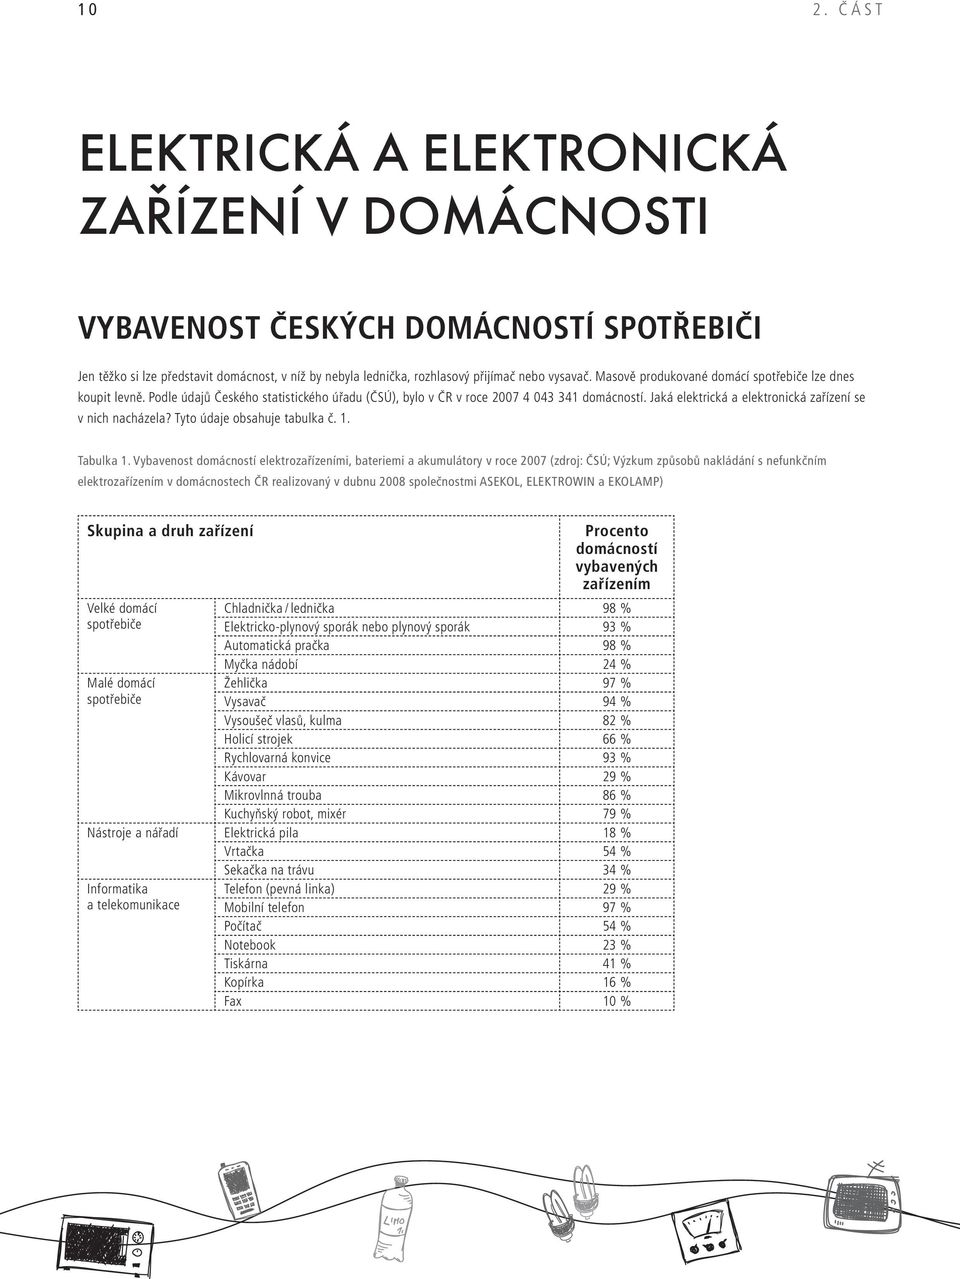 Masově produkované domácí spotřebiče lze dnes koupit levně. Podle údajů Českého statistického úřadu (ČSÚ), bylo v ČR v roce 2007 4 043 341 domácností.